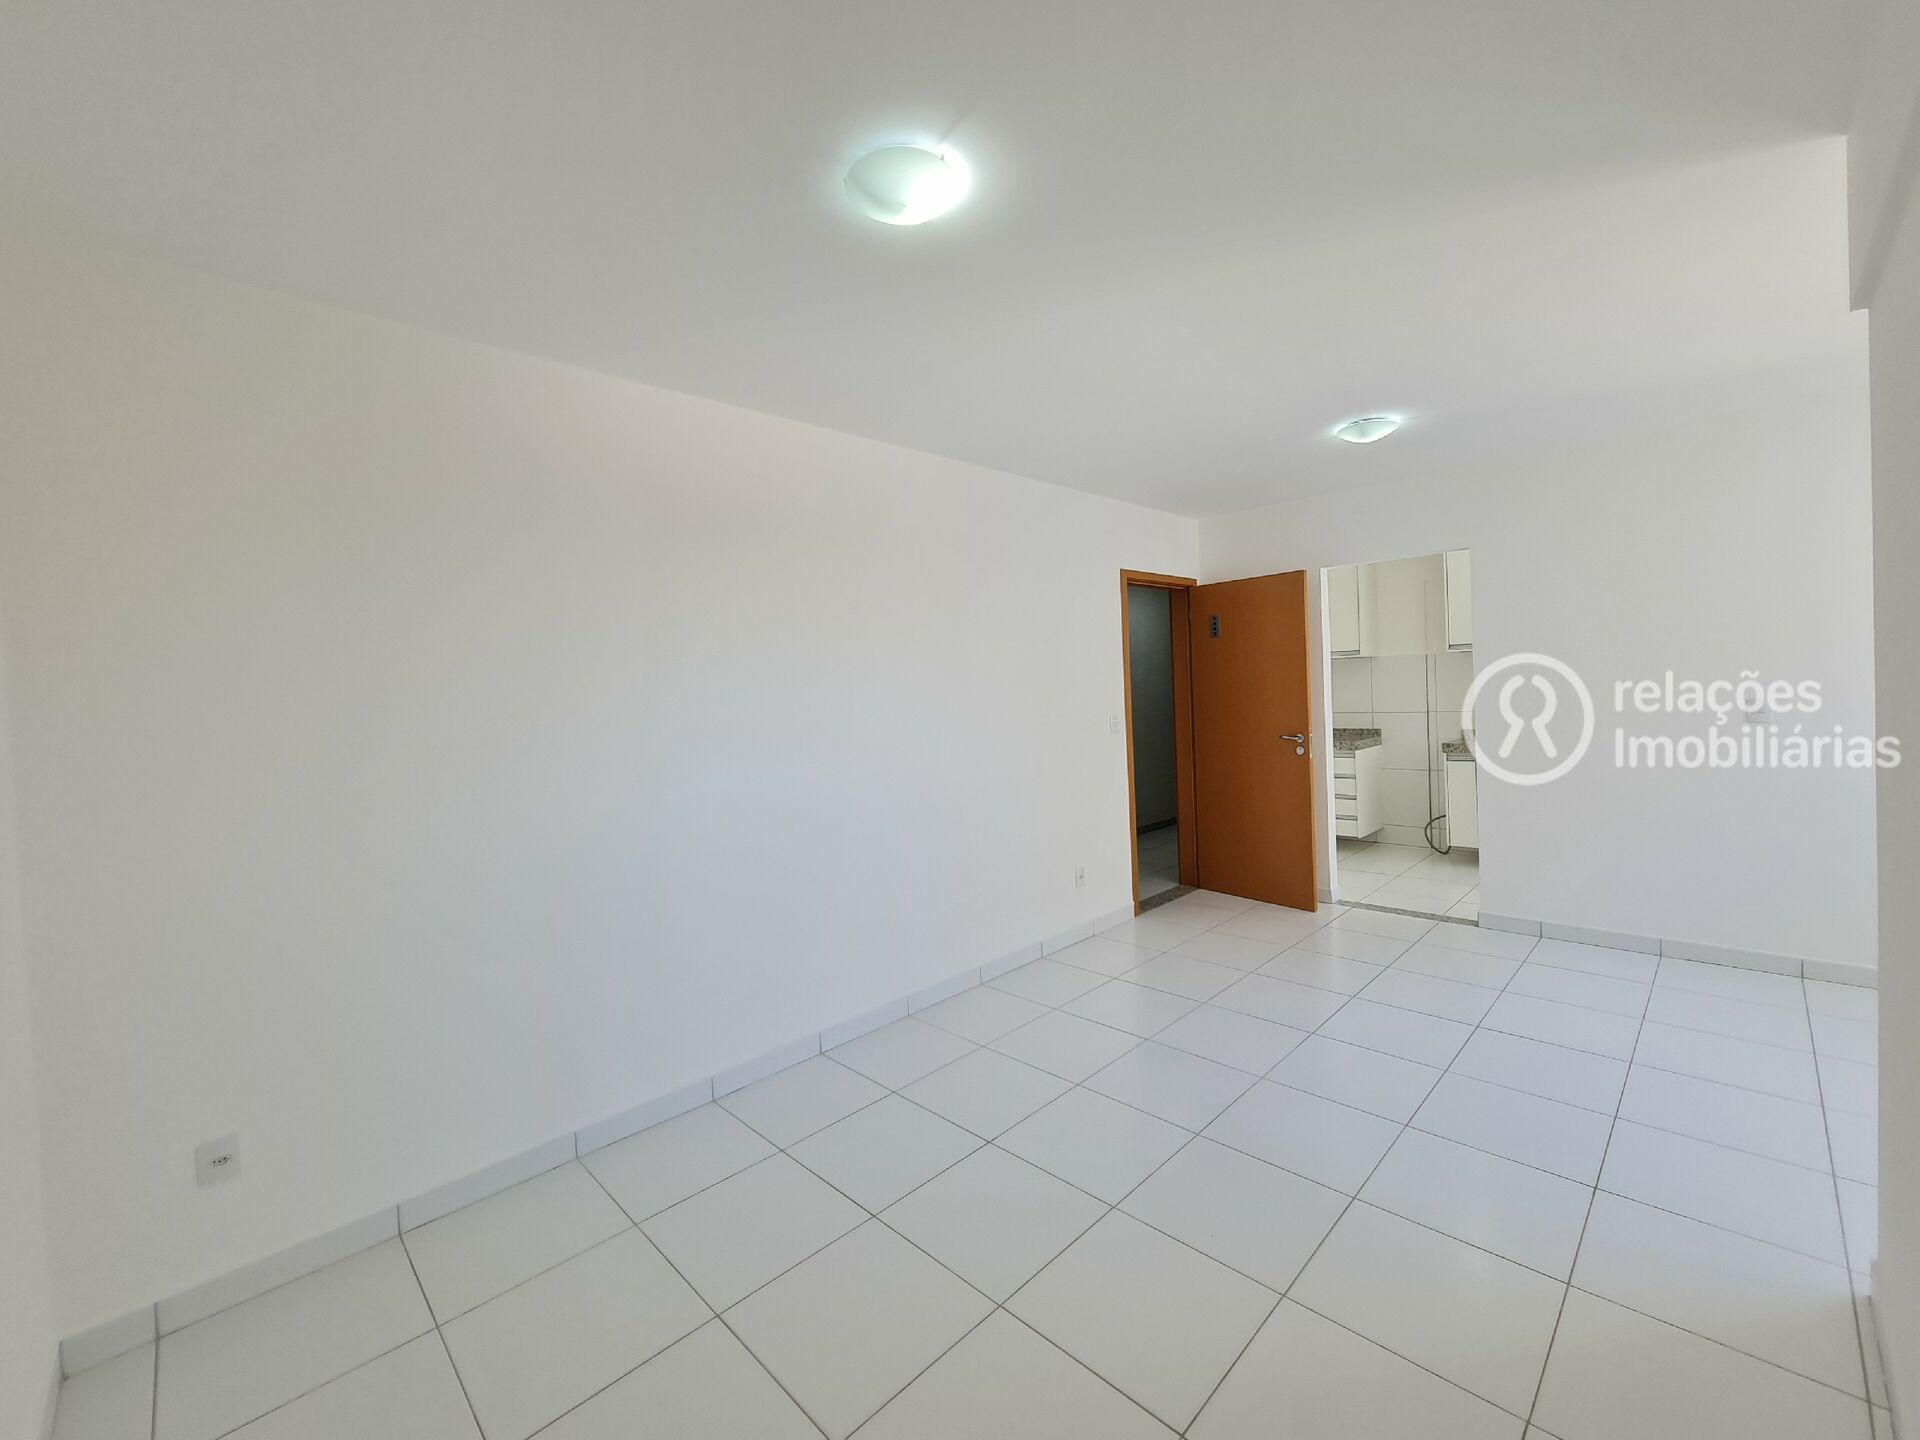 Apartamento, 2 quartos, 55 m² - Foto 4